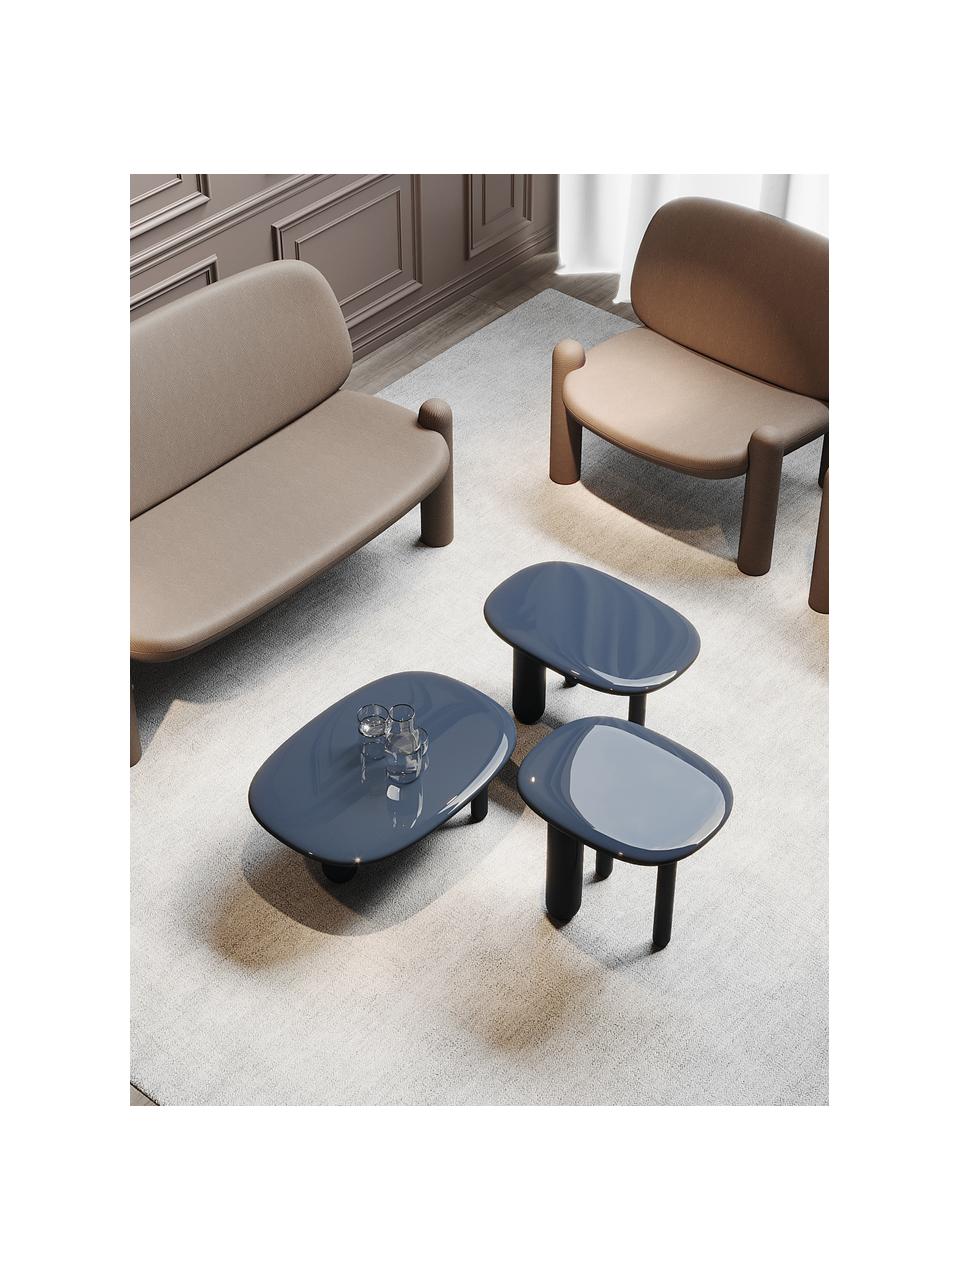 Oválný konferenční stolek Tottori, Lakovaná dřevovláknitá deska střední hustoty (MDF), Dřevo, lakované šedomodrou barvou, Š 78 cm, H 54 cm